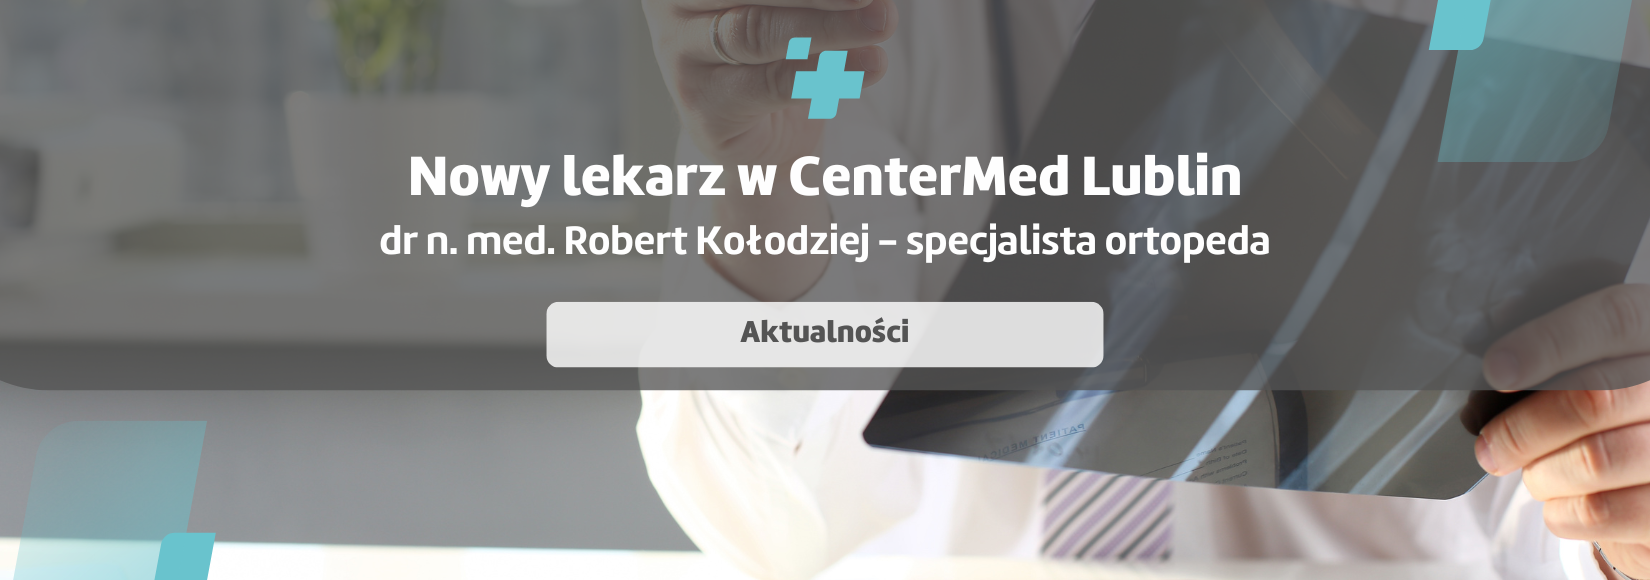 Nowy ortopeda w Lublinie - dr n. med. Robert Kołodziej 